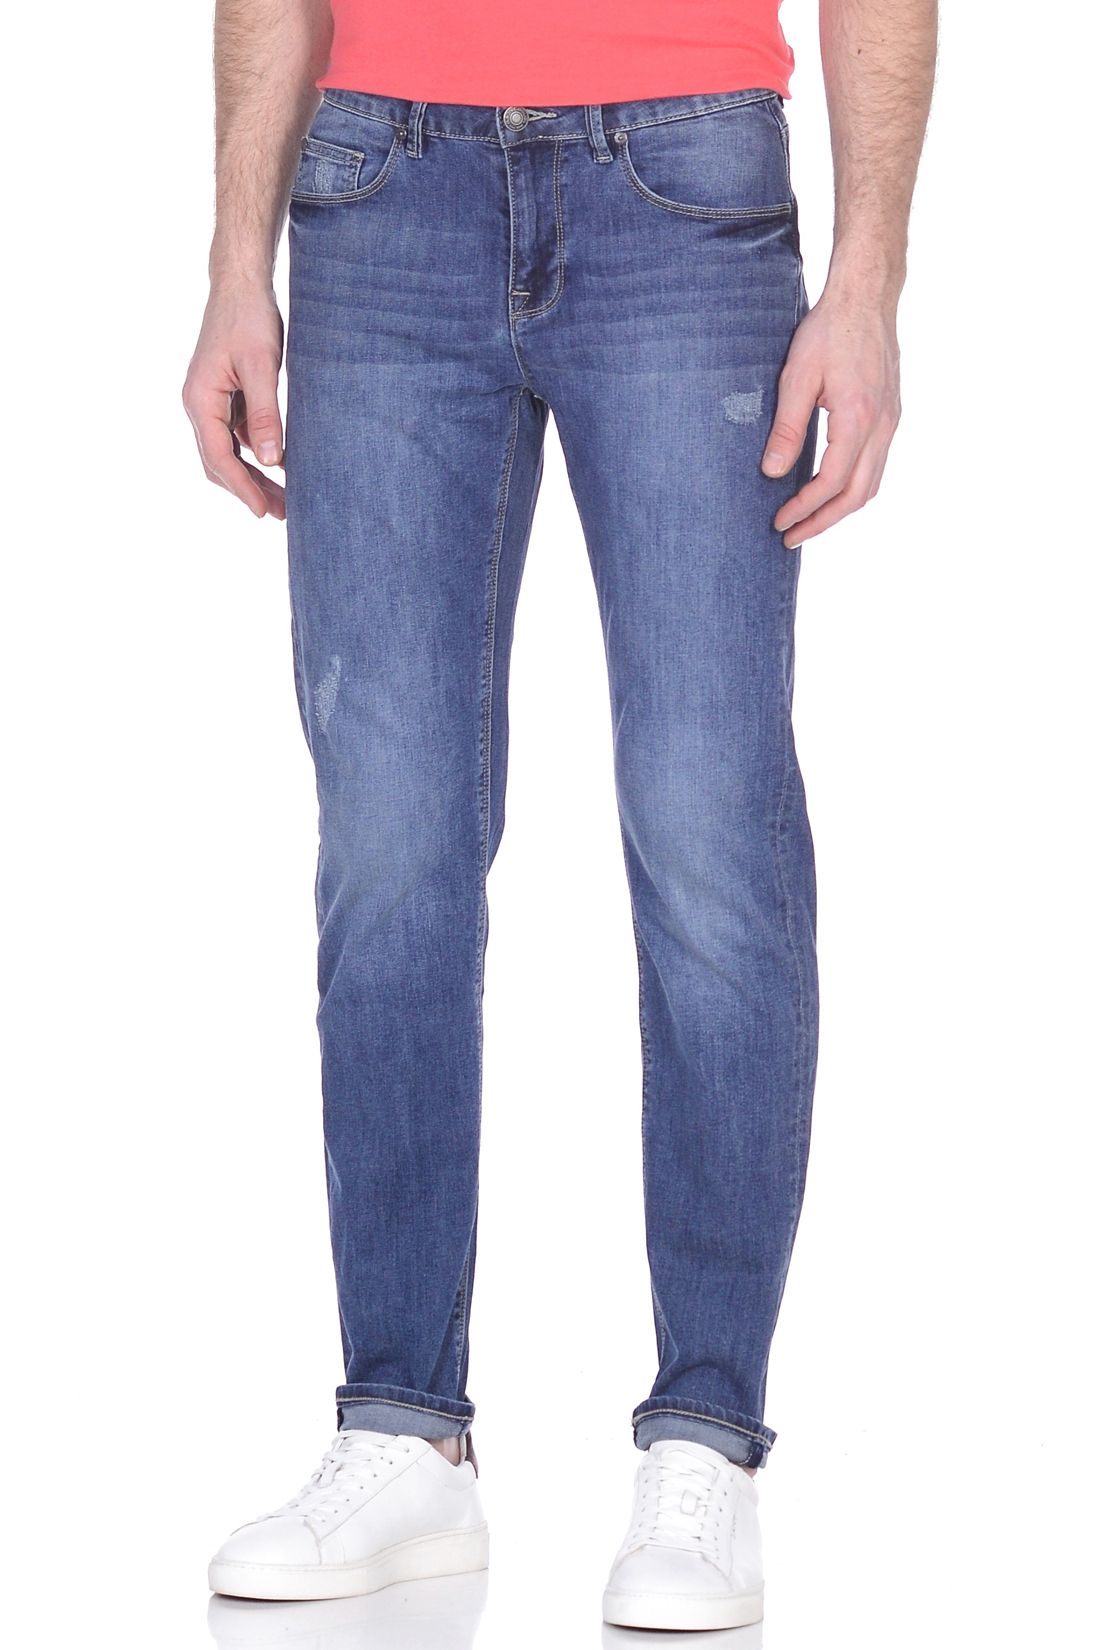 Зауженные джинсы с потёртостями (арт. baon B809006), размер 36, цвет blue denim#голубой Зауженные джинсы с потёртостями (арт. baon B809006) - фото 4